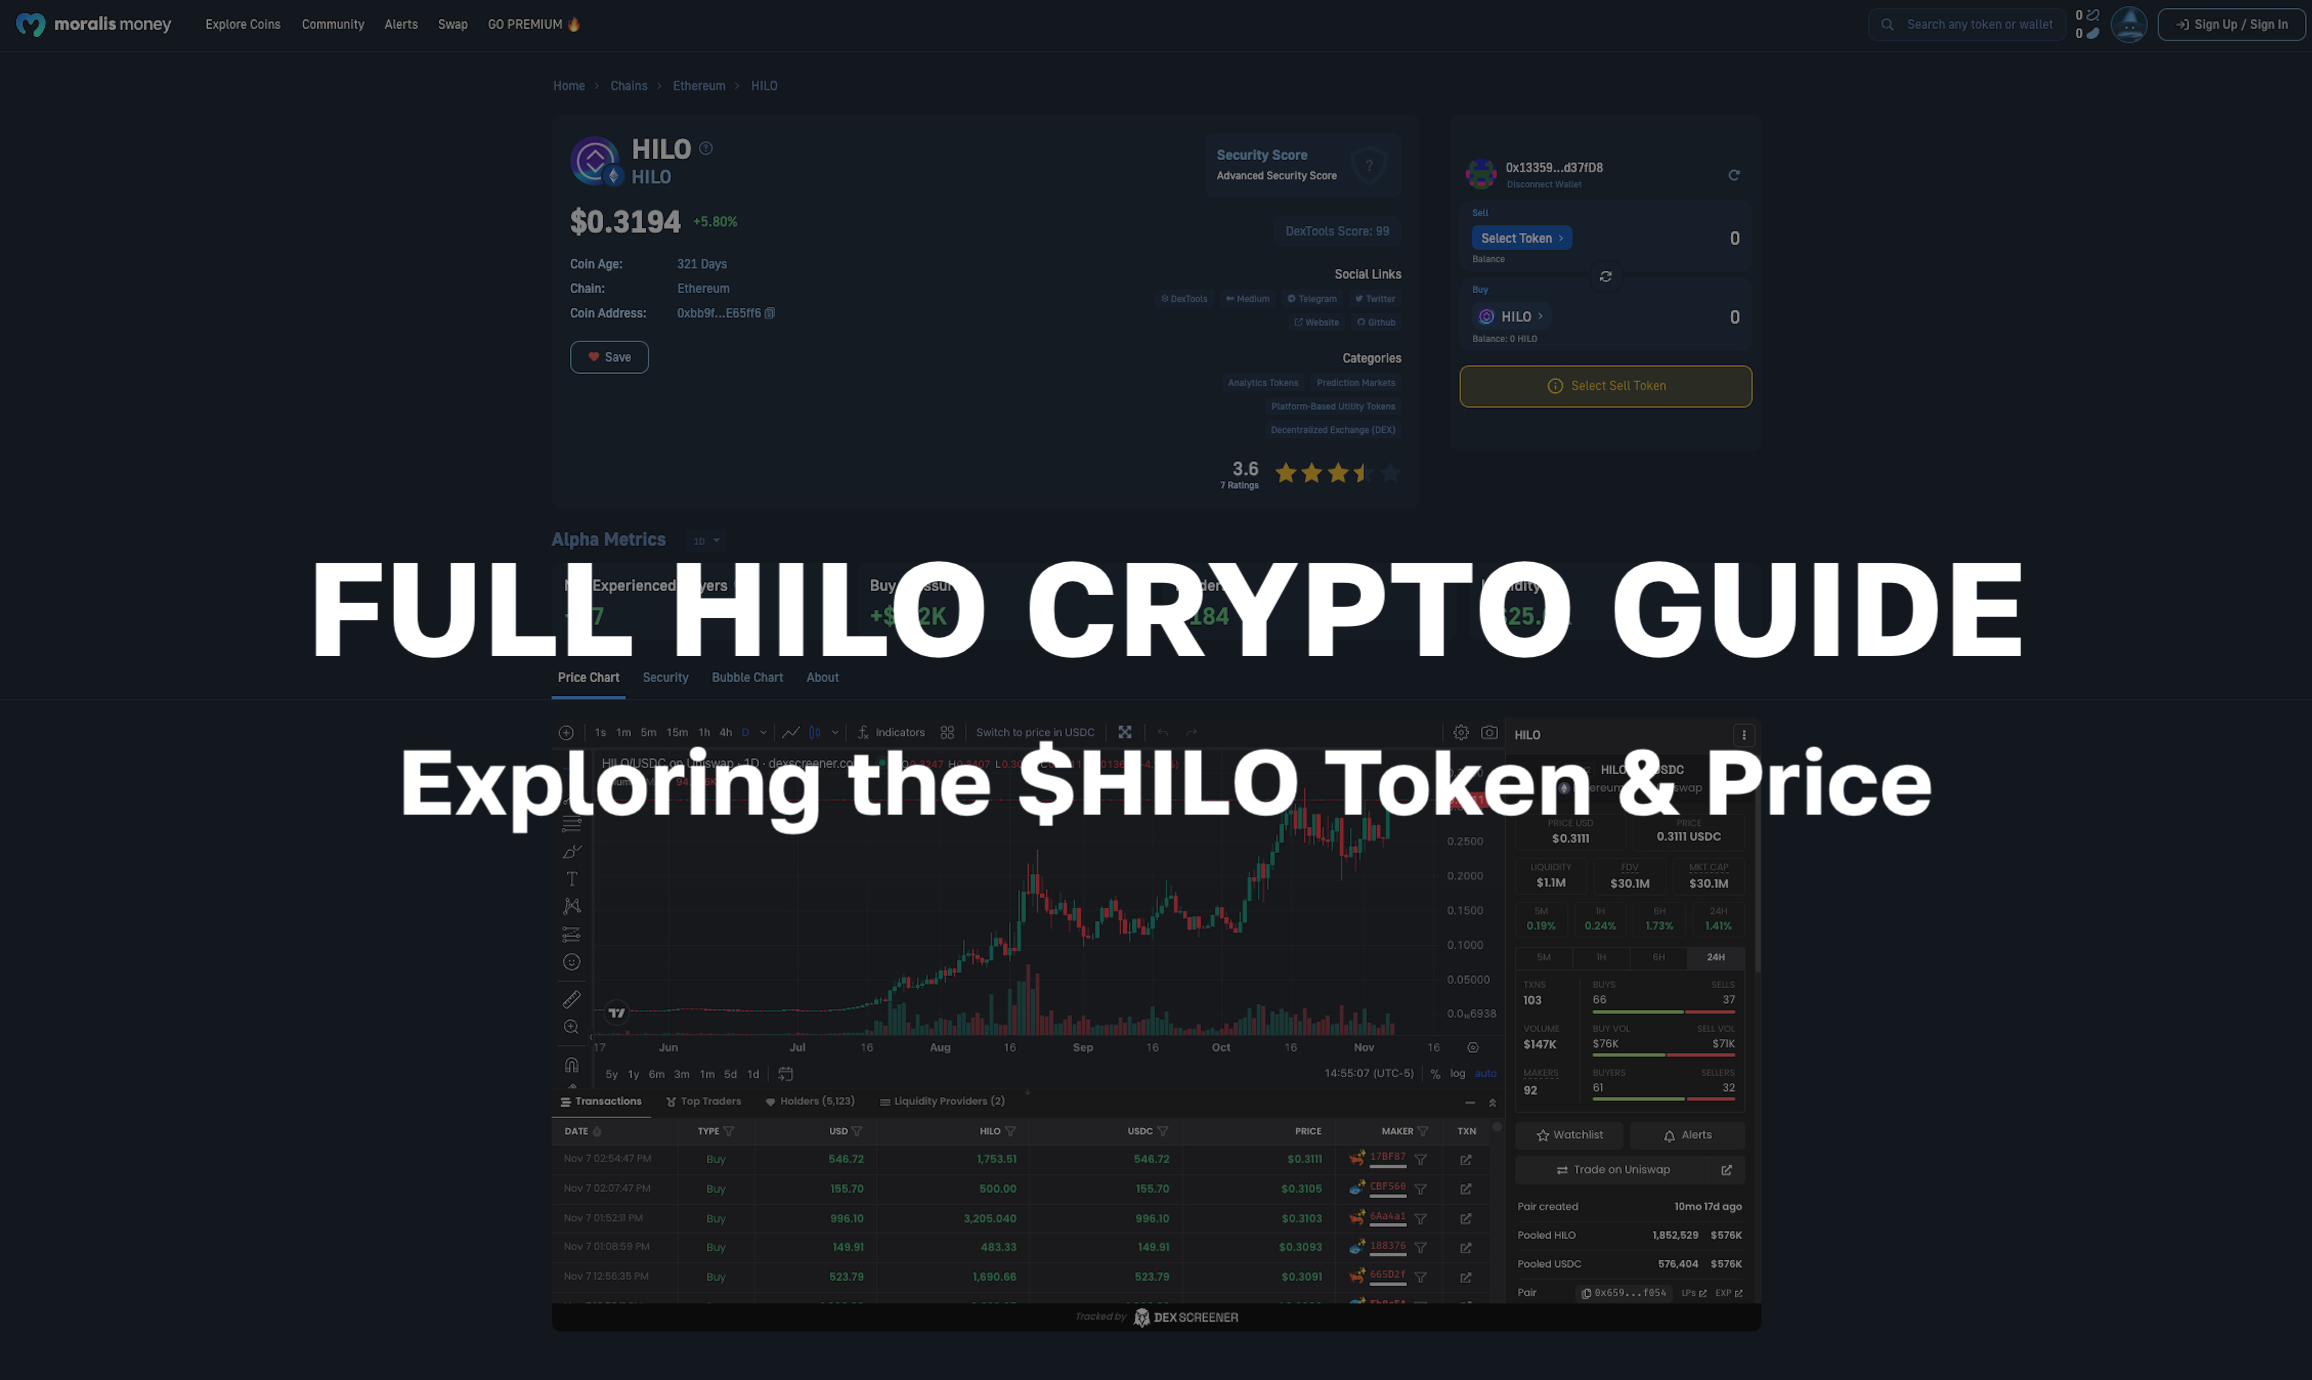 Full HILO Crypto Guide - Exploring the $HILO Token & Price